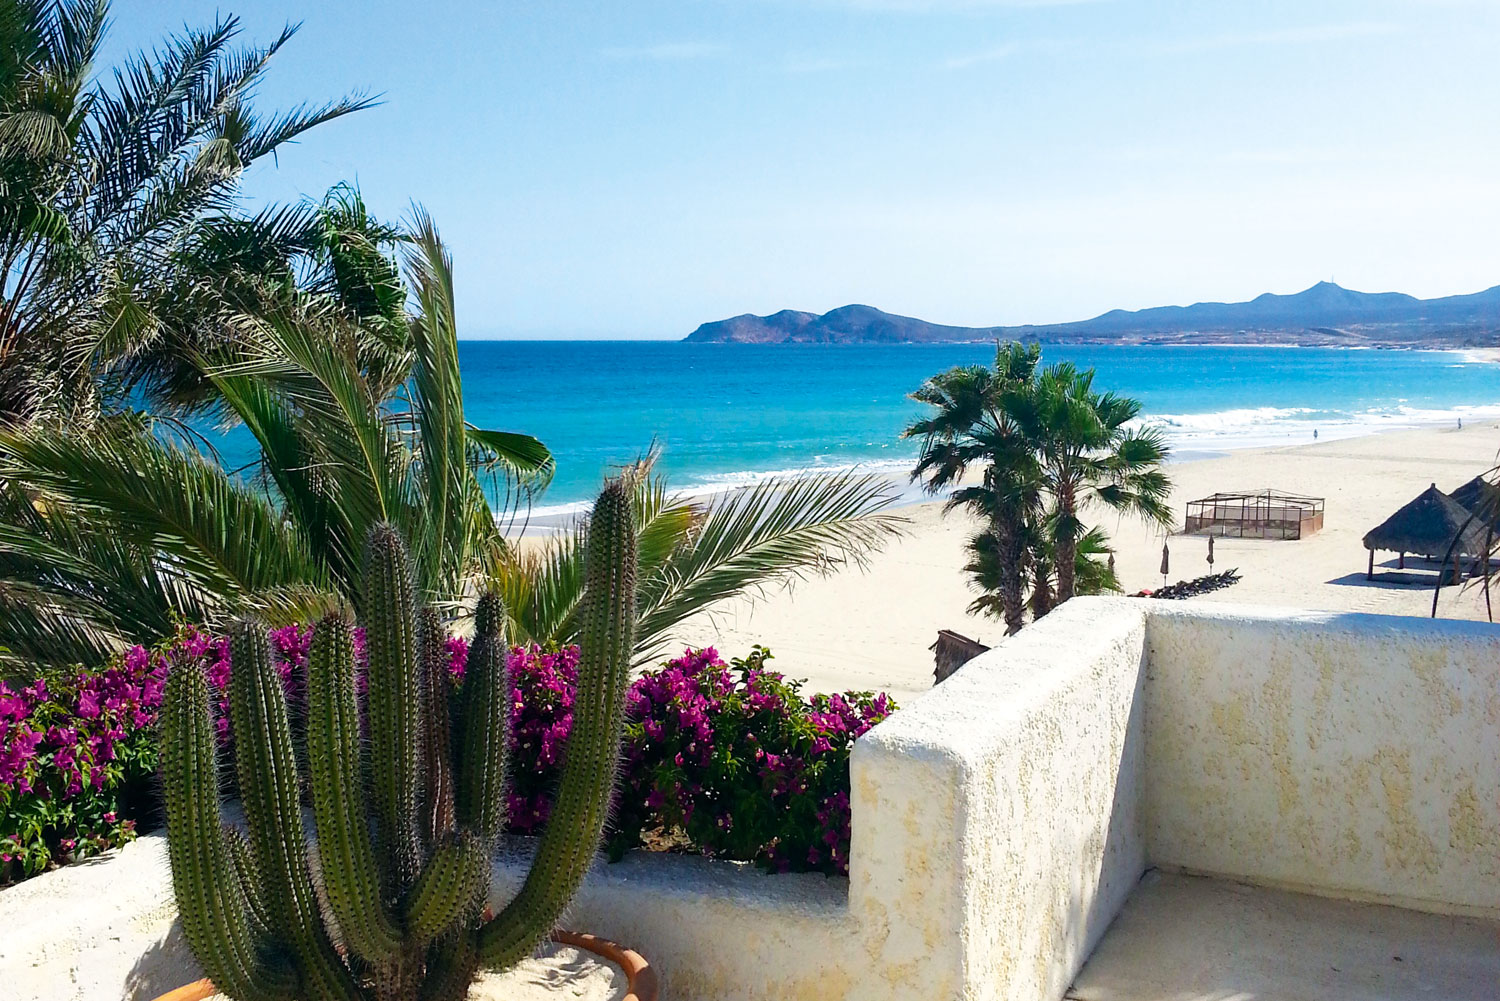 Overlooking the beach at Las Ventanas al Paraiso resort in Baja California Sur, Mexico.